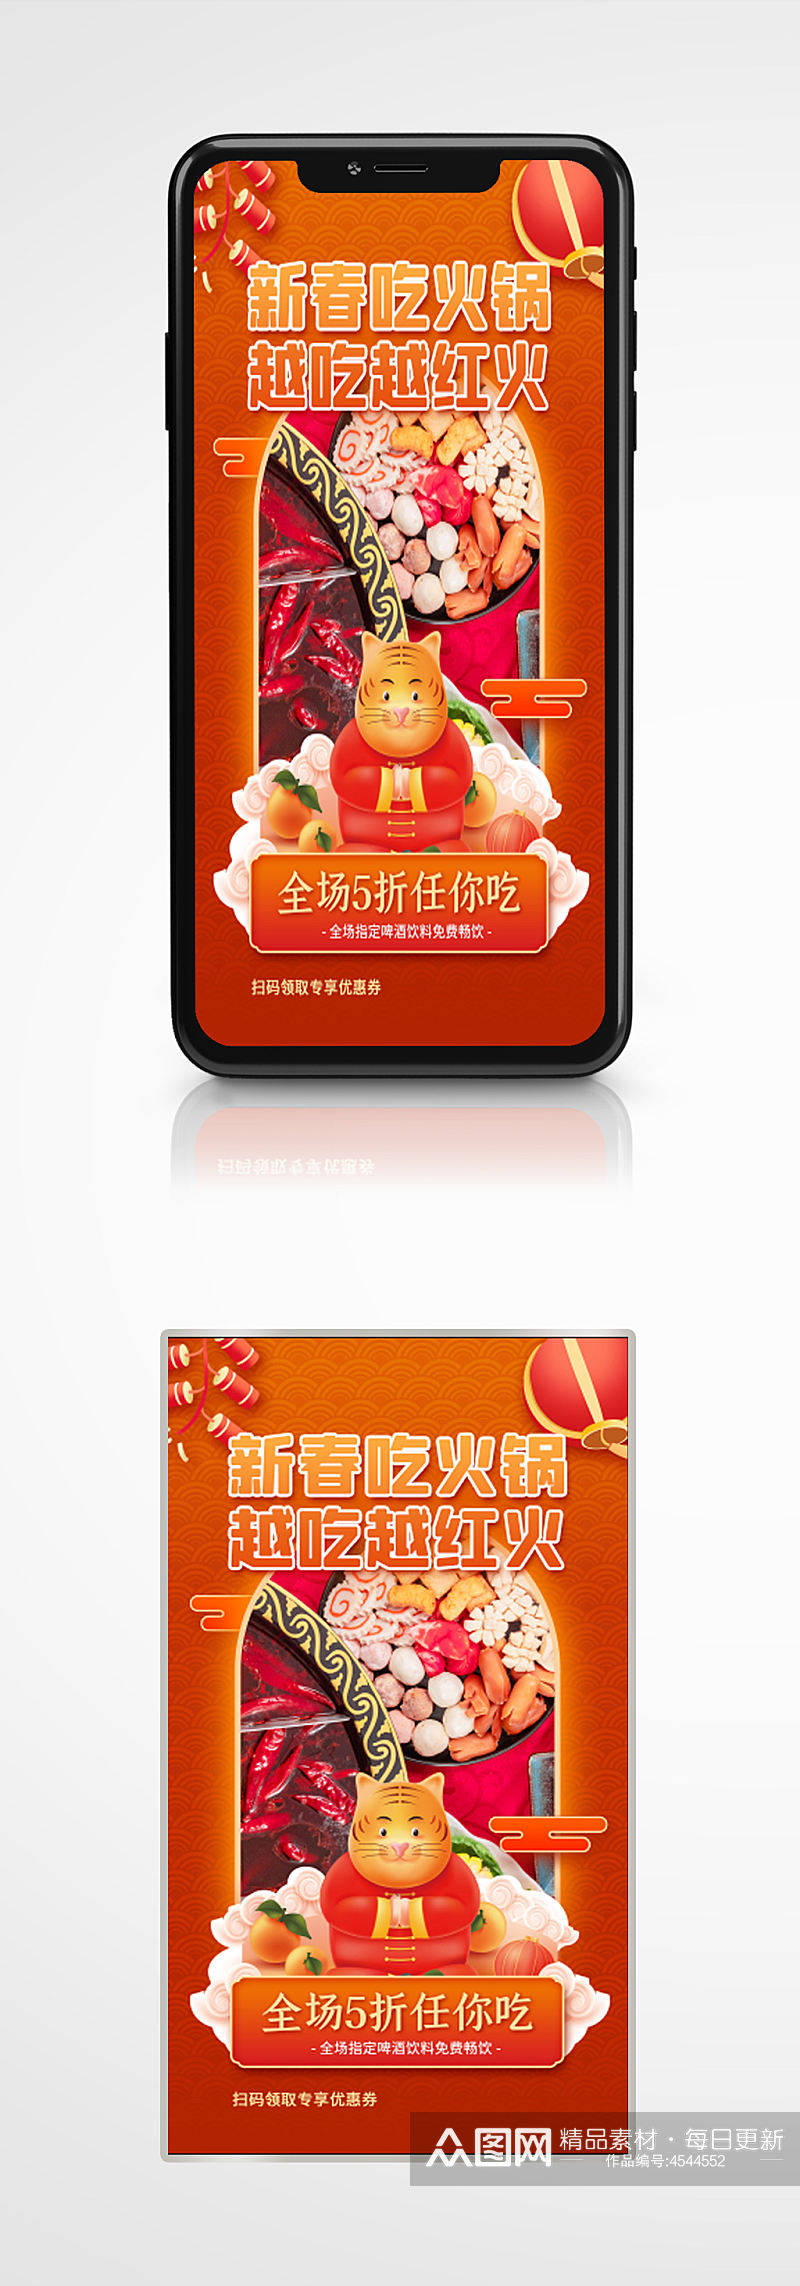 春节火锅促销优惠手机海报新年喜庆餐厅素材